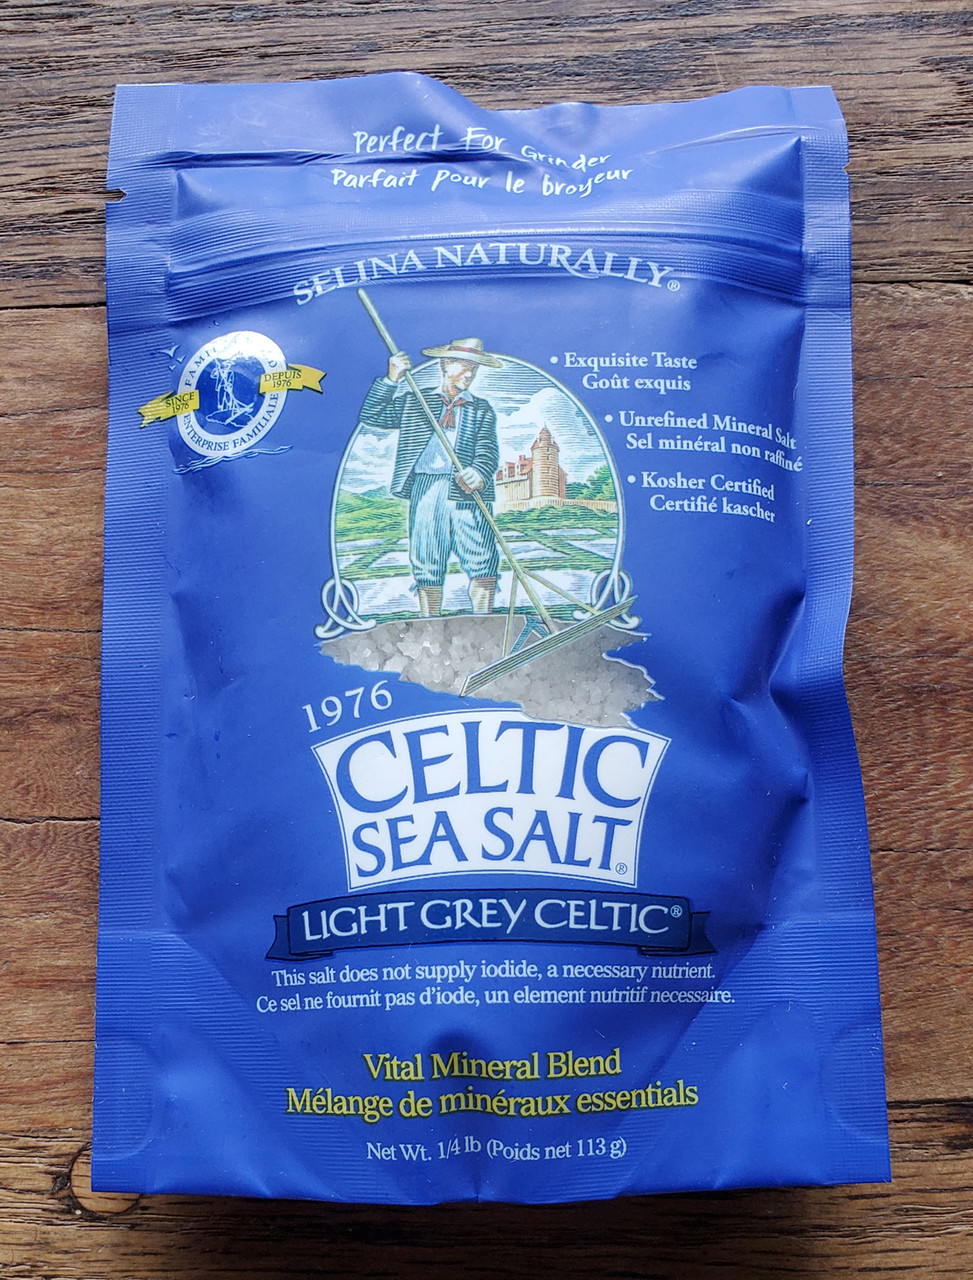 What Is Celtic Sea Salt?